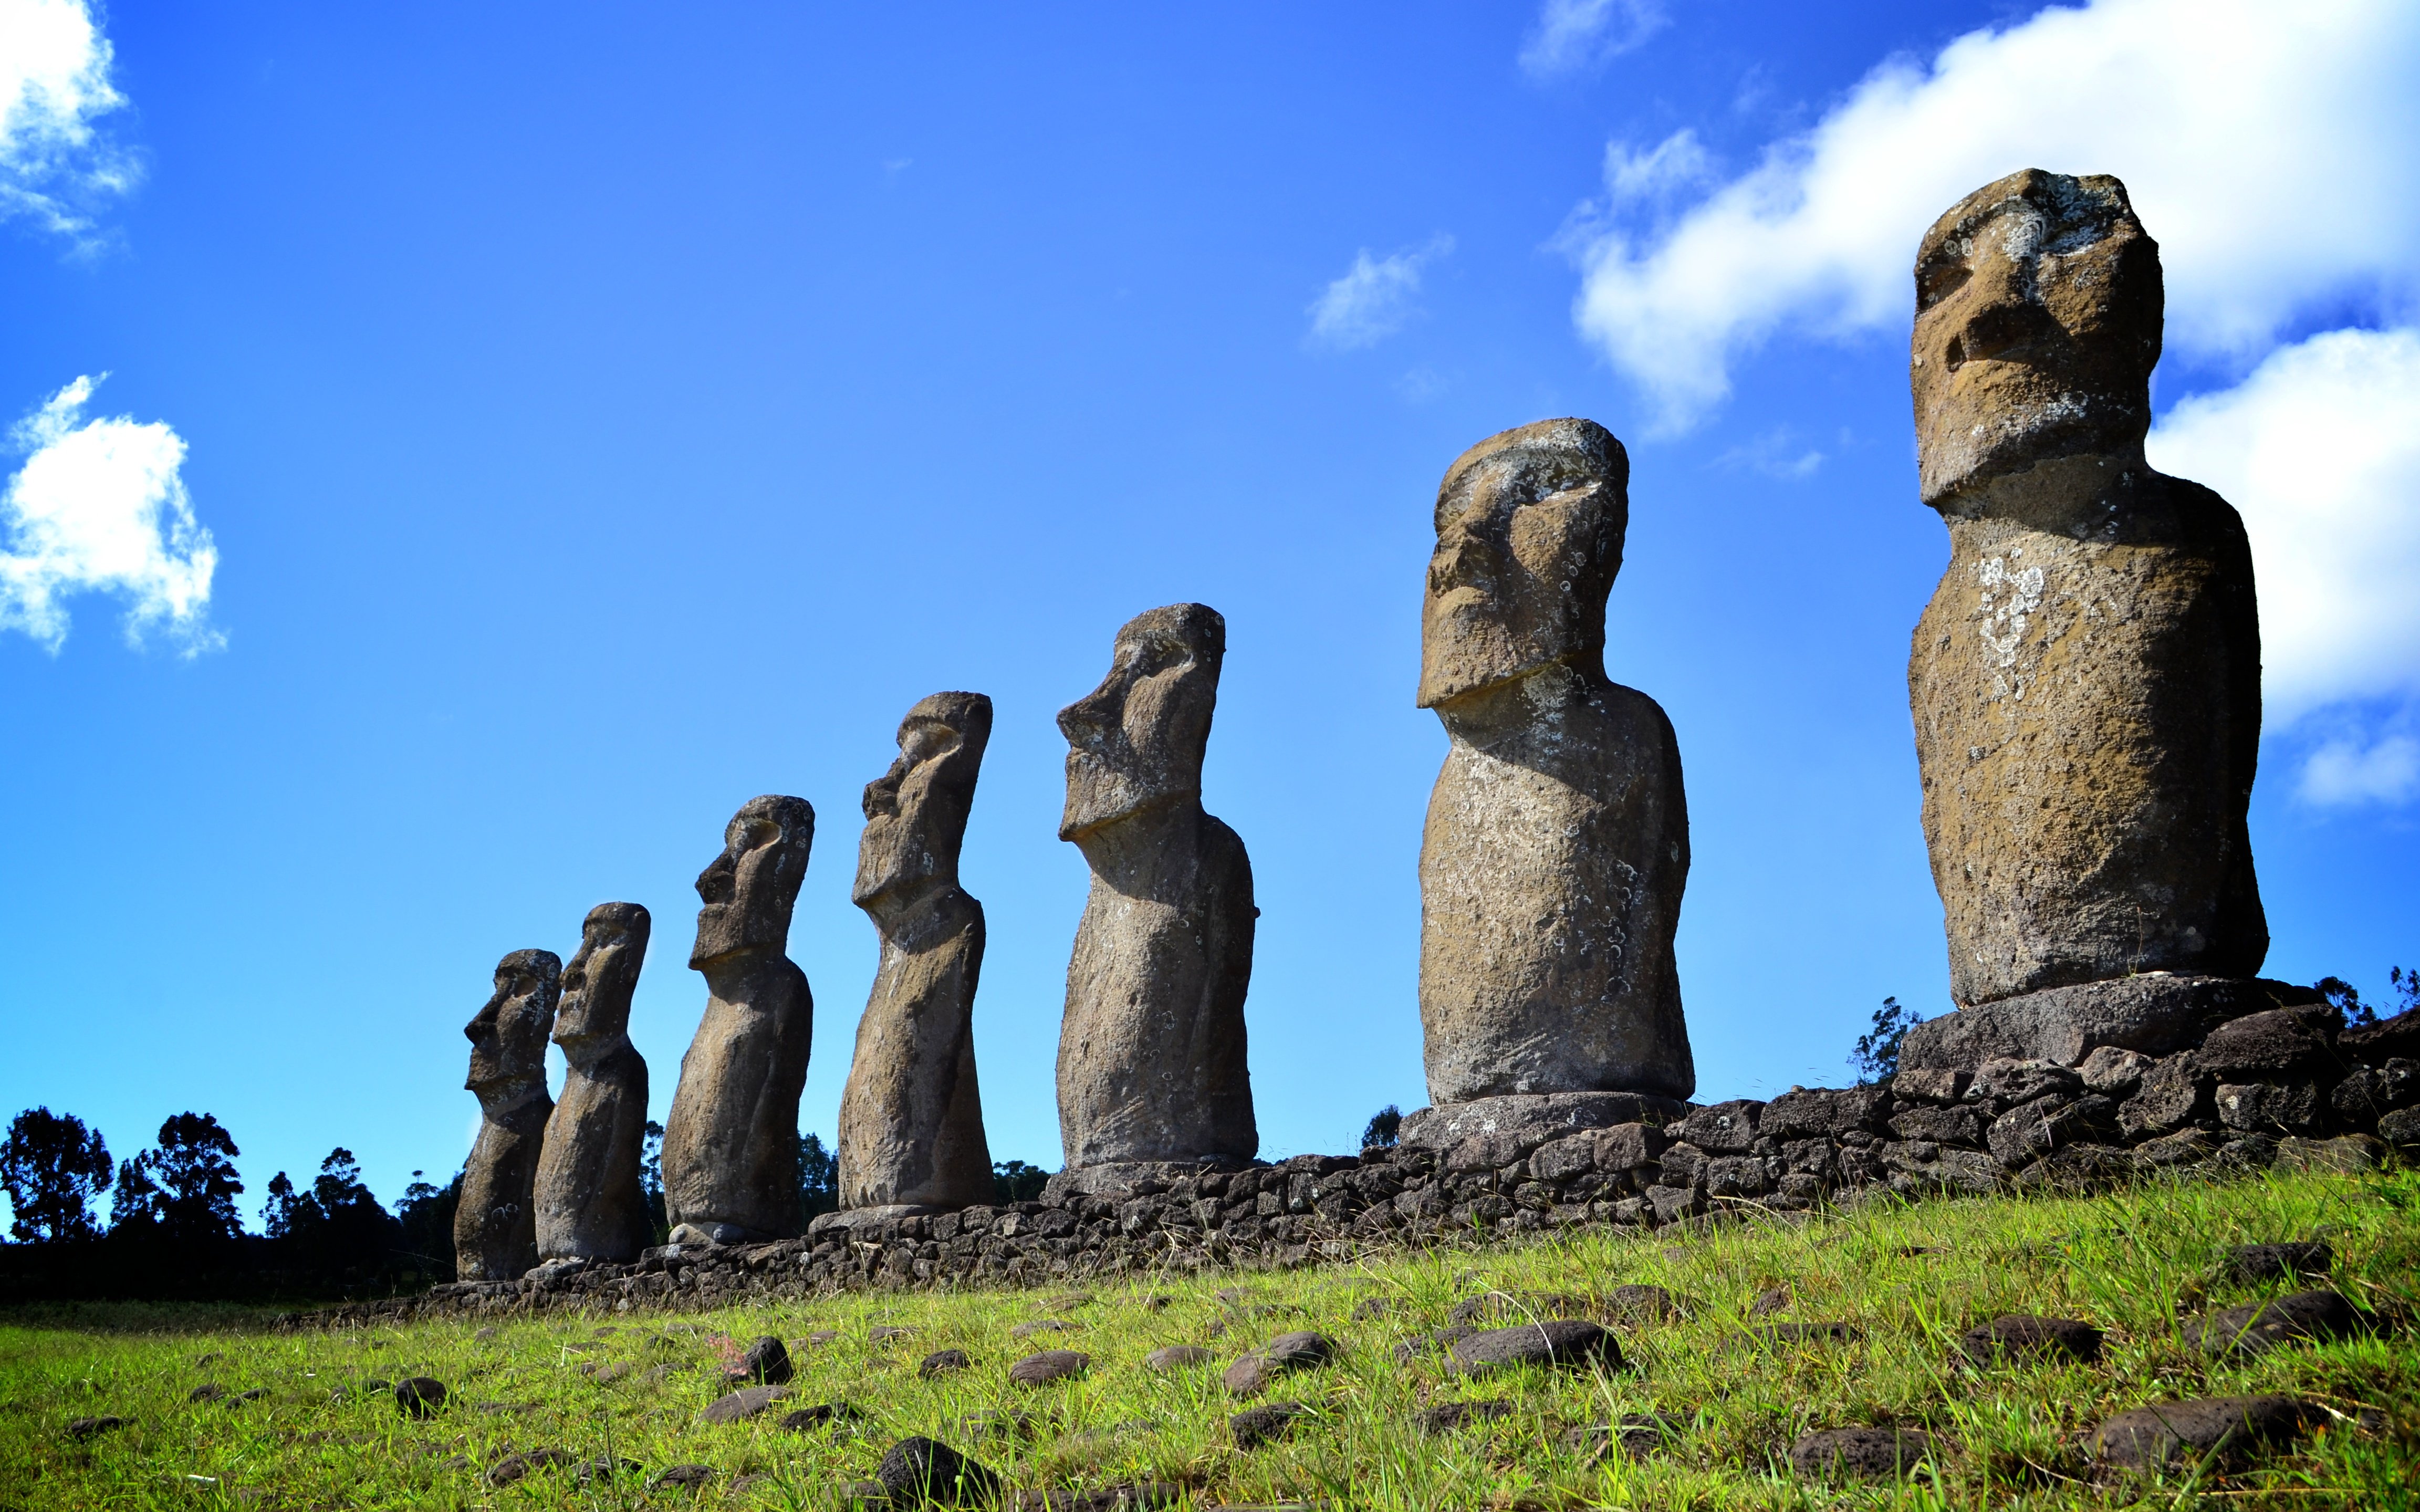 Каменные идолы. Моаи (статуи острова Пасхи), Чили. Чили остров Пасхи, Чили Моаи. Каменные истуканы острова Пасхи. Остров Пасхи статуи Моаи.